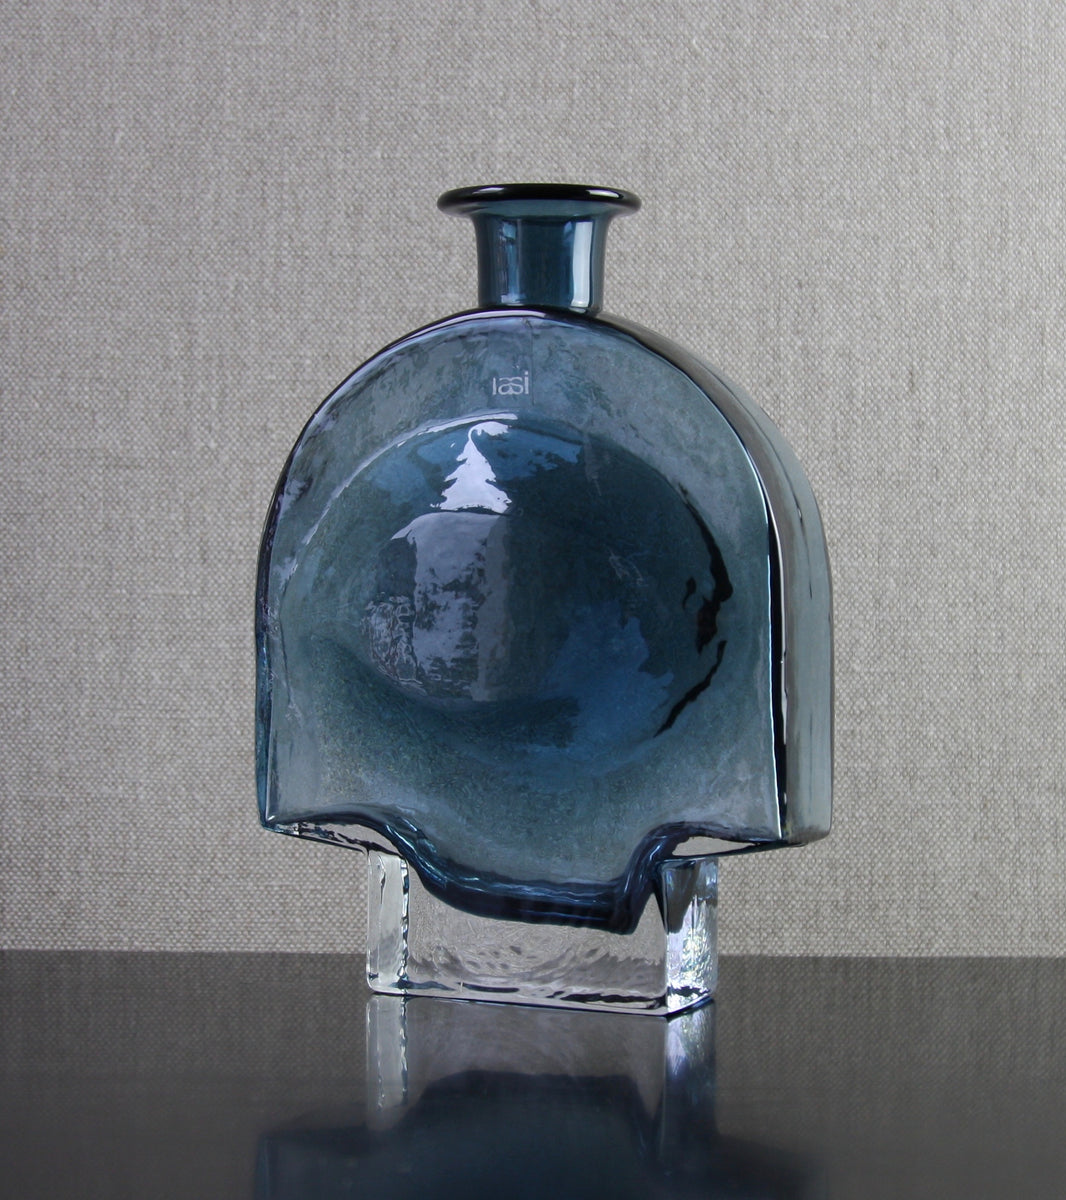 Steel Blue Model 1717 "Kyynel" (Tear) Bottle Vase by Nanny Still, 1973